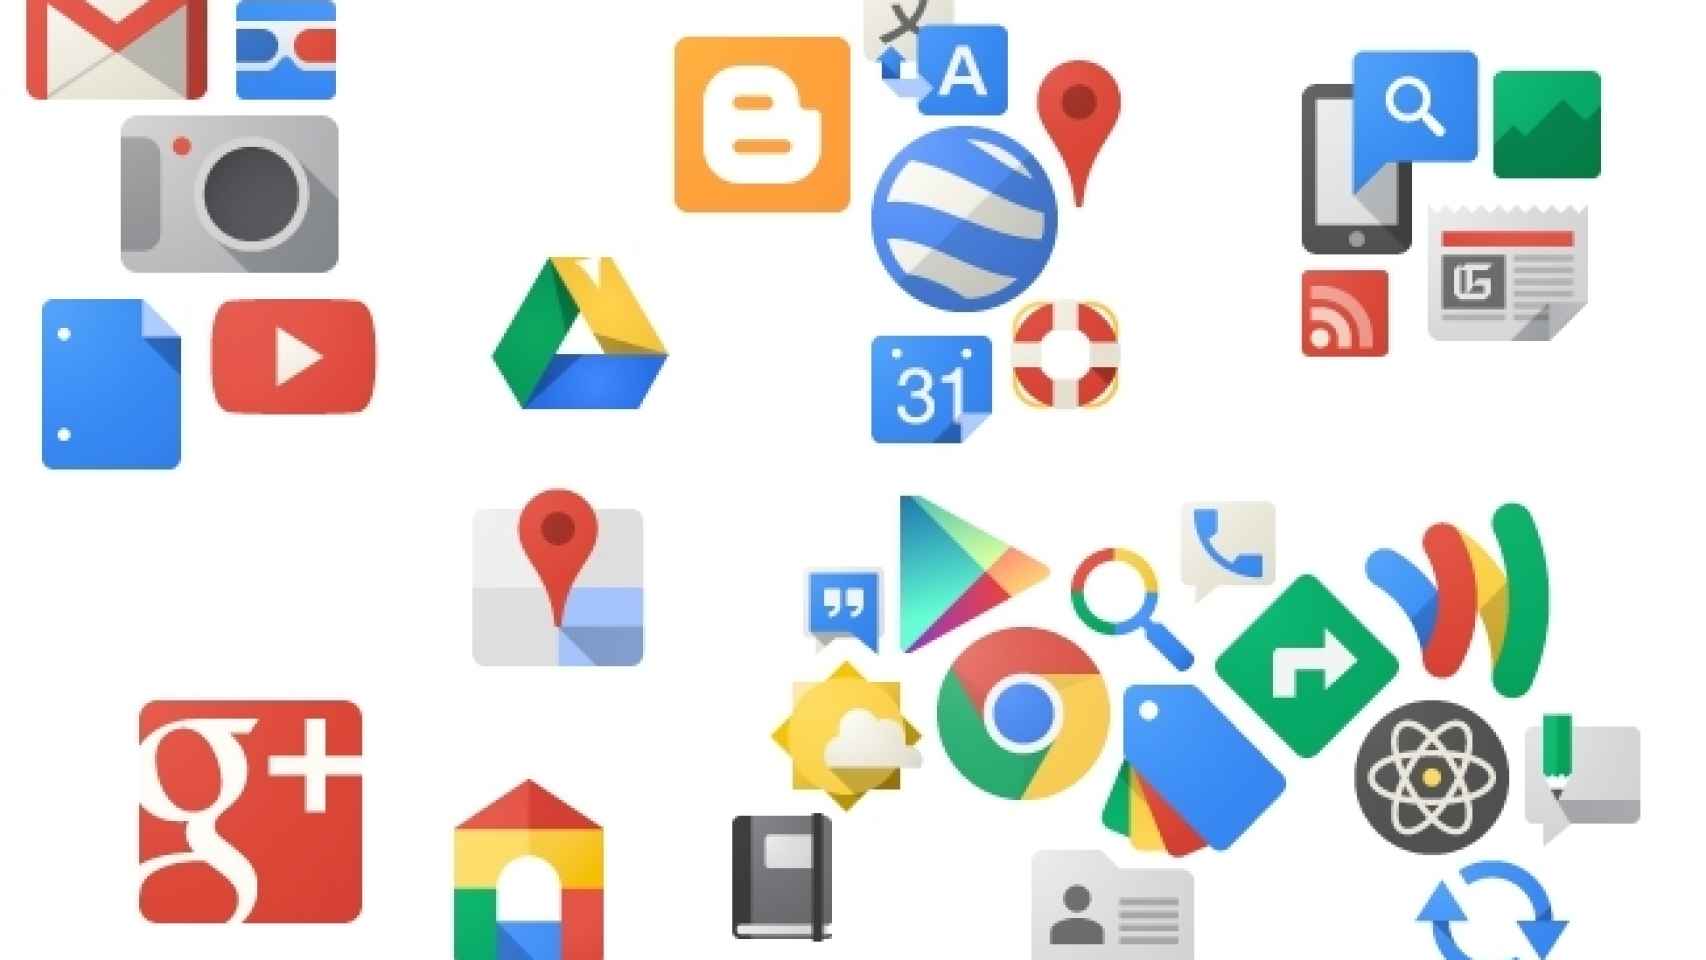 ¿Por qué Google crea dos apps diferentes que sirven para lo mismo?